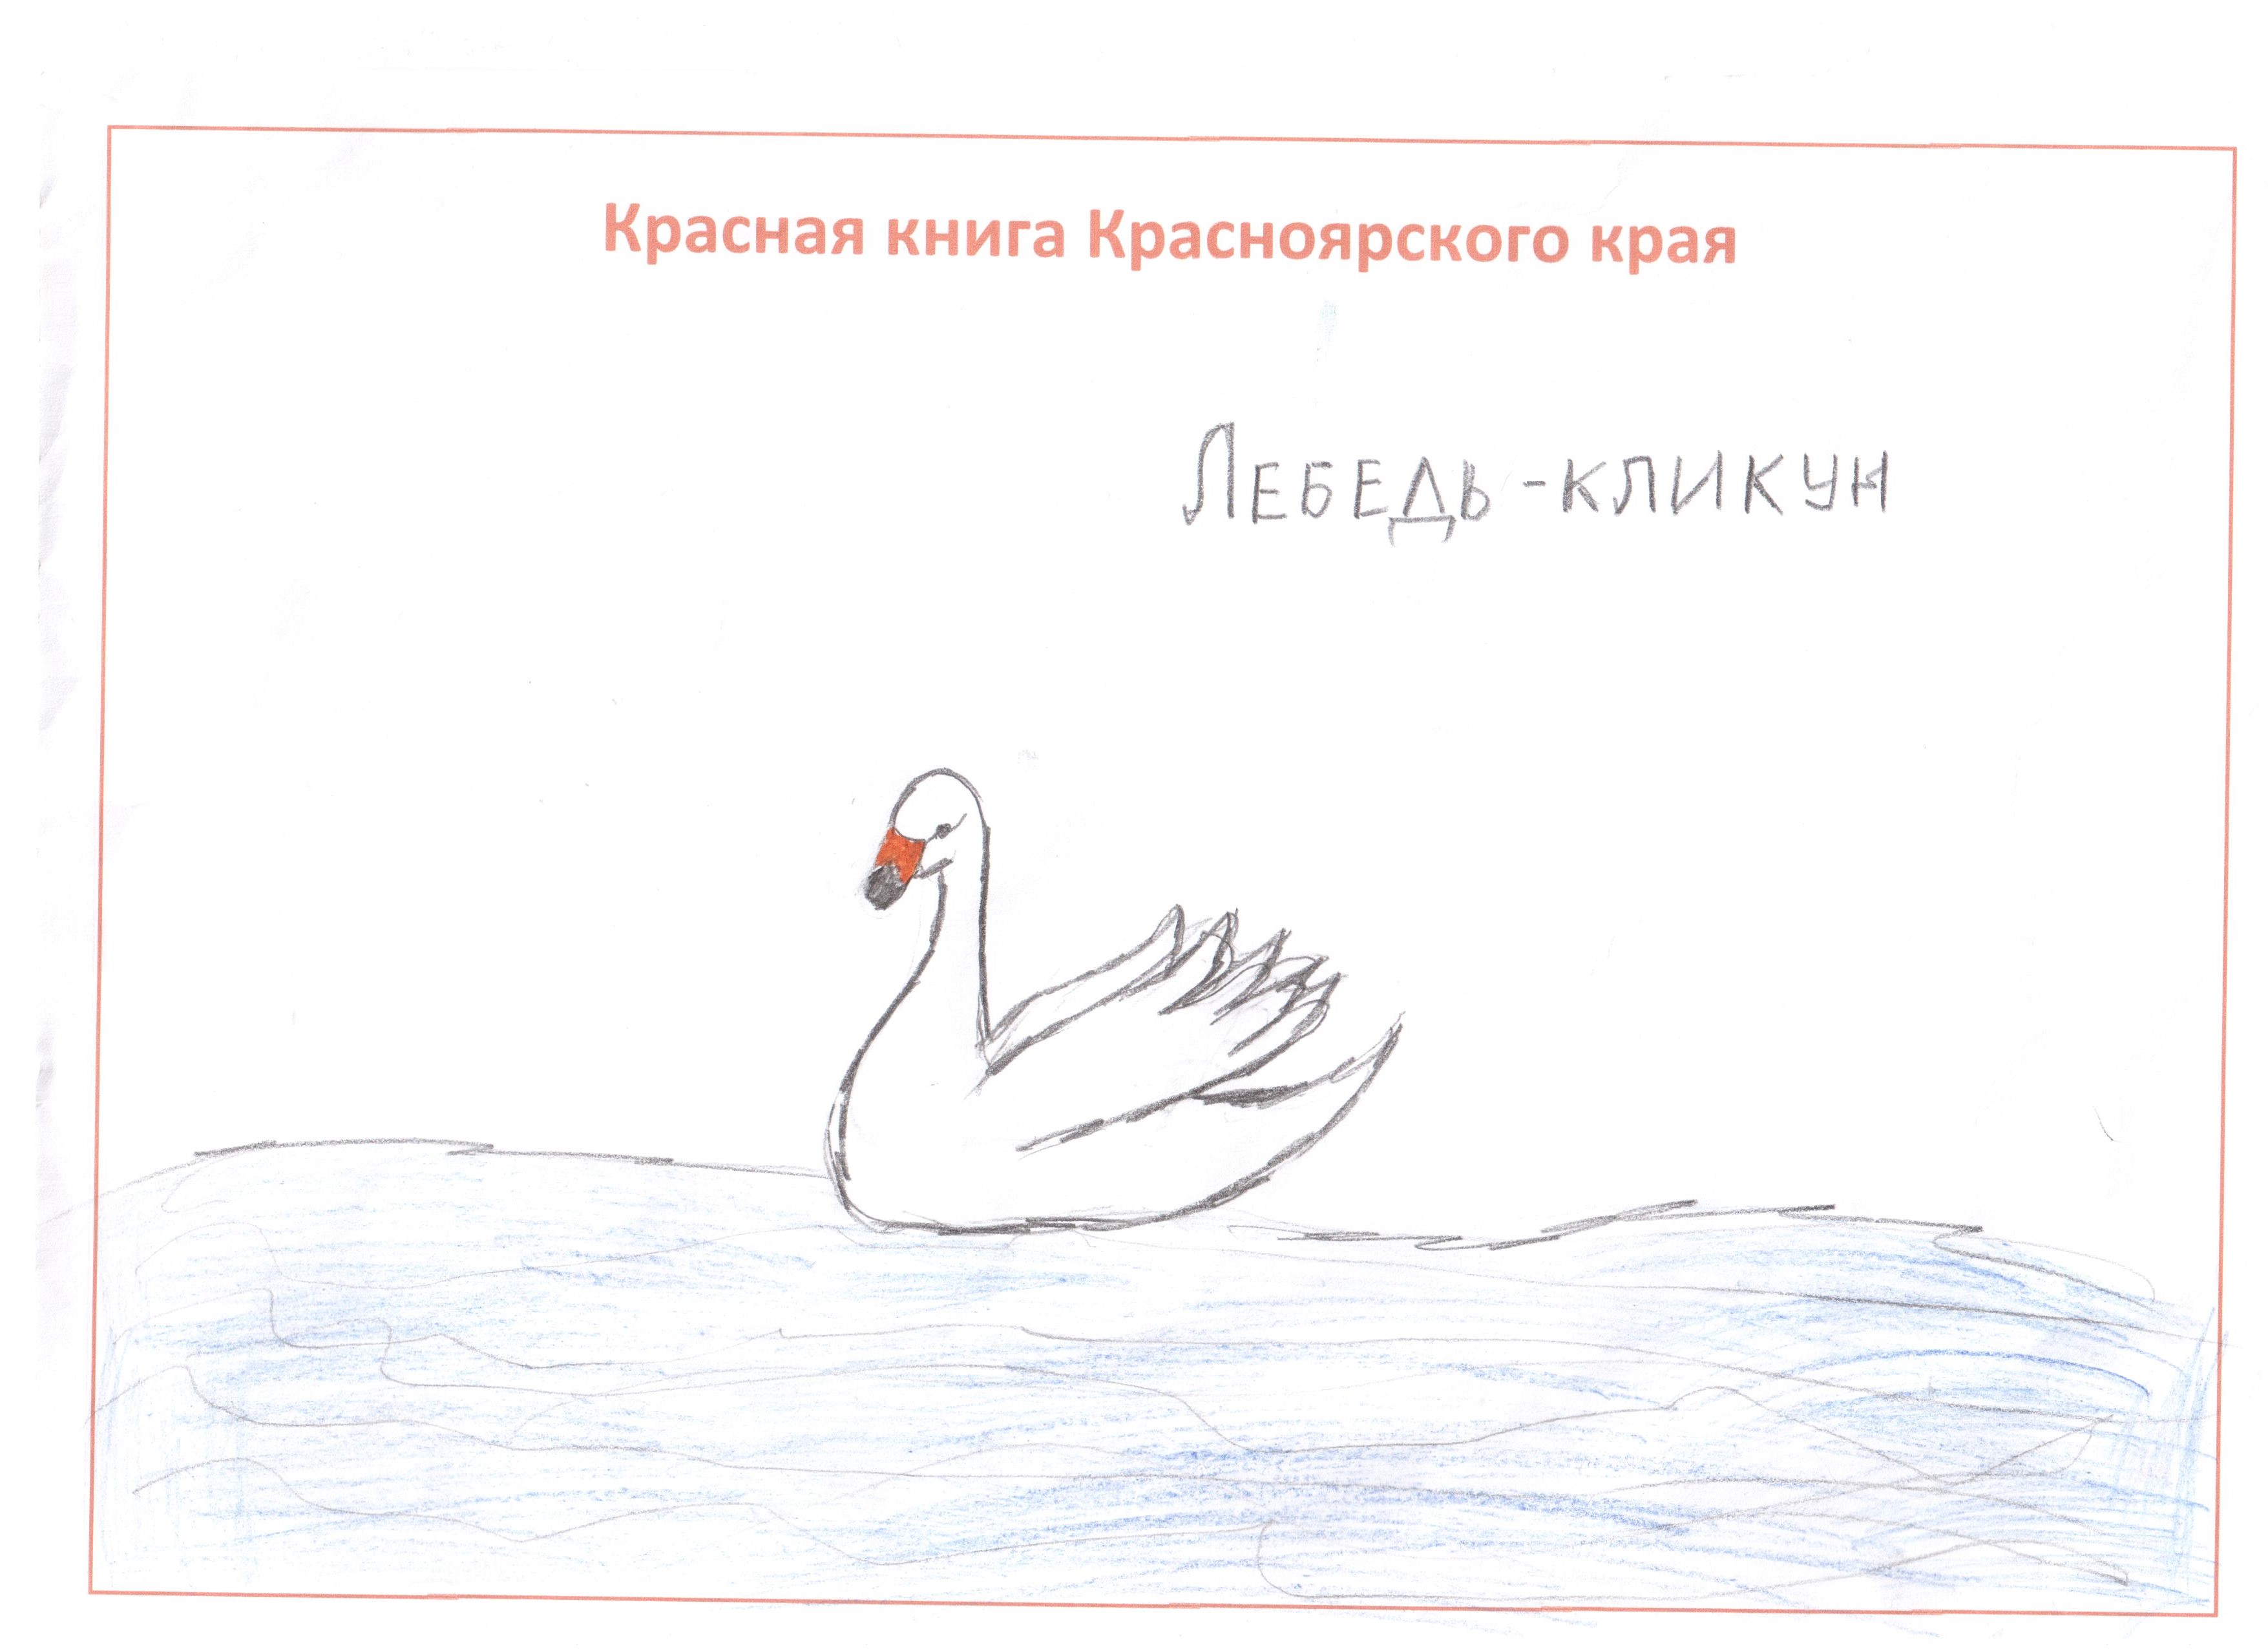 Рисунок лебедя кликуна из Пермского края из красной книги